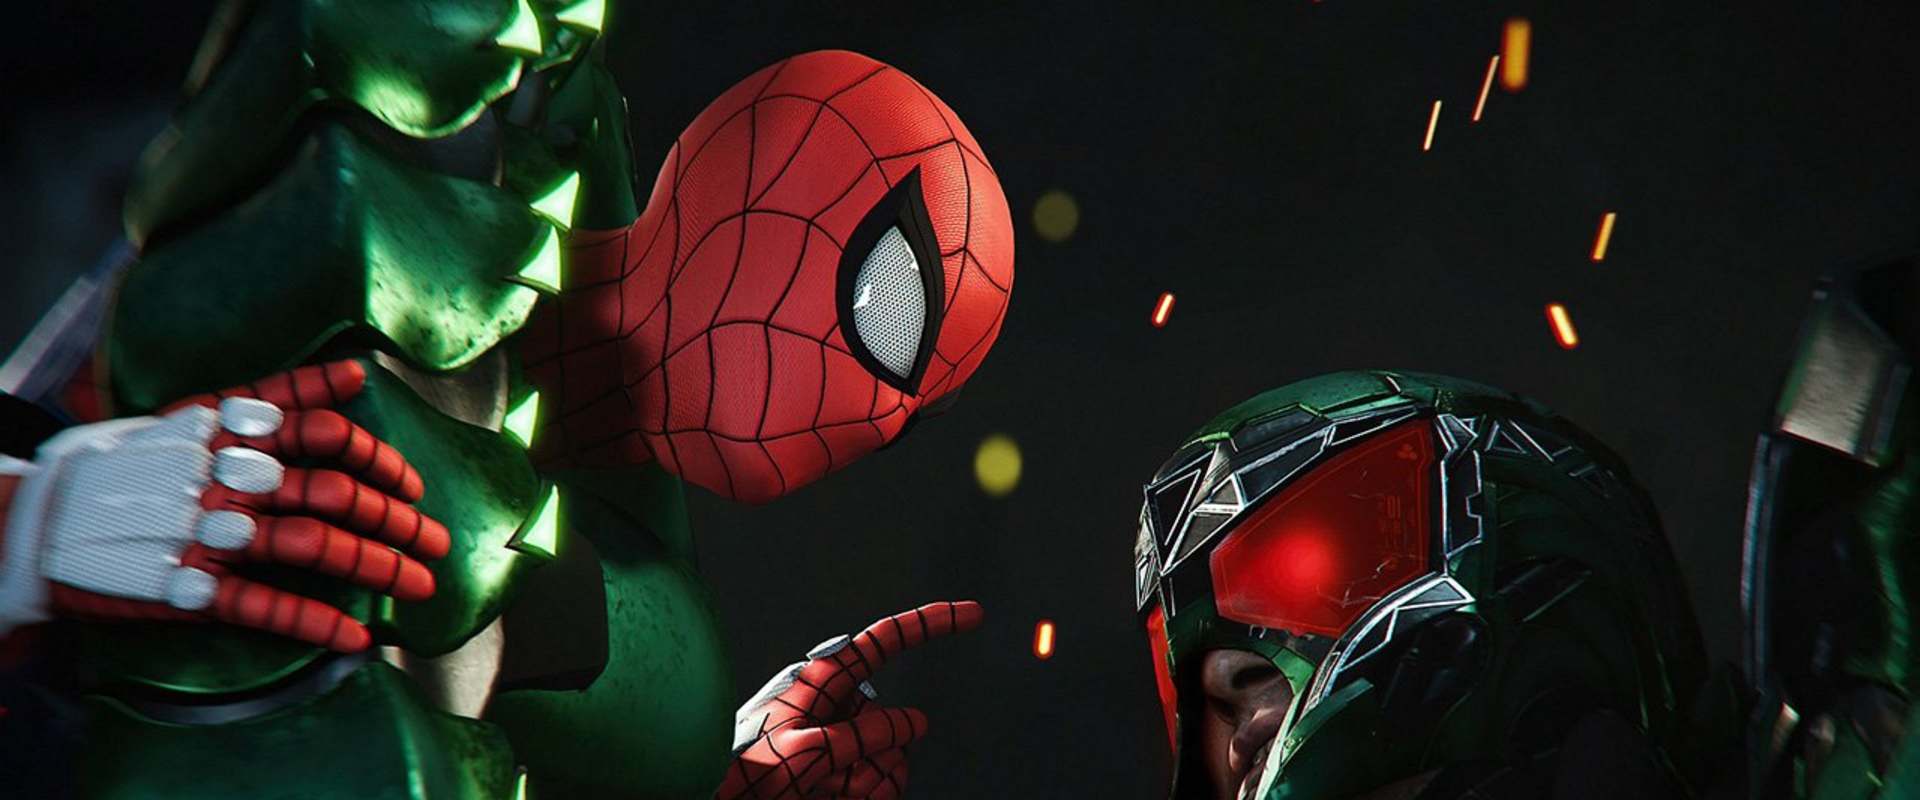 Marvel's Spider-Man background 1